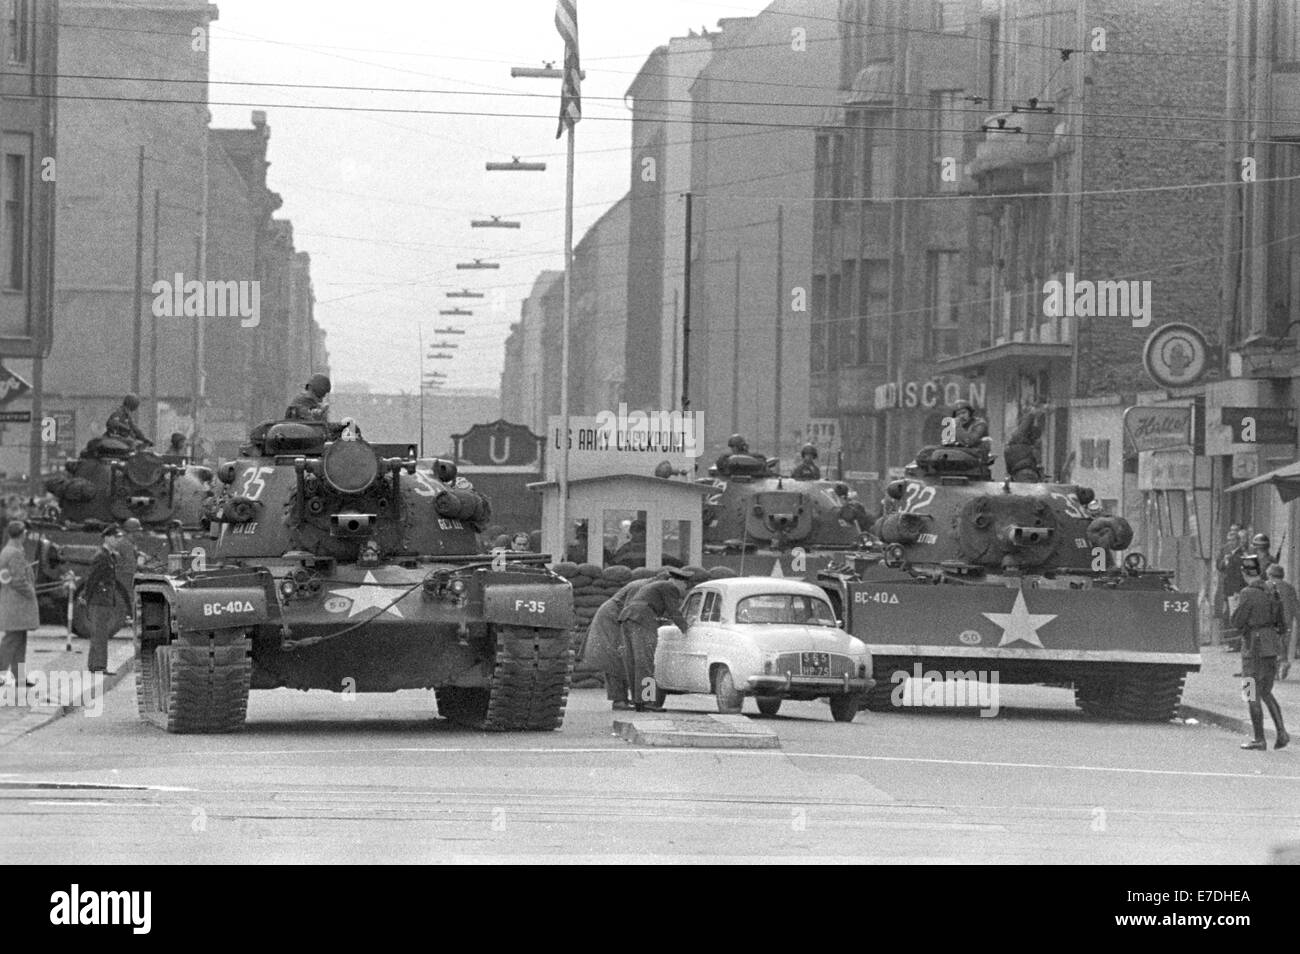 Amerikanische Panzer parken am Grenzübergang Checkpoint Charlie auf der Friedrichstraße in Berlin, Deutschland, 27. Oktober 1961. Nach einem Zwischenfall an der Grenze wurden sowjetische und amerikanische Panzer am Grenzübergang der Alliierten stationiert. Sie wurden einen Tag später ohne weitere Zwischenfälle wieder zurückgezogen. Fotoarchiv für Zeitgeschichtee - KEIN KABELDIENST Stockfoto